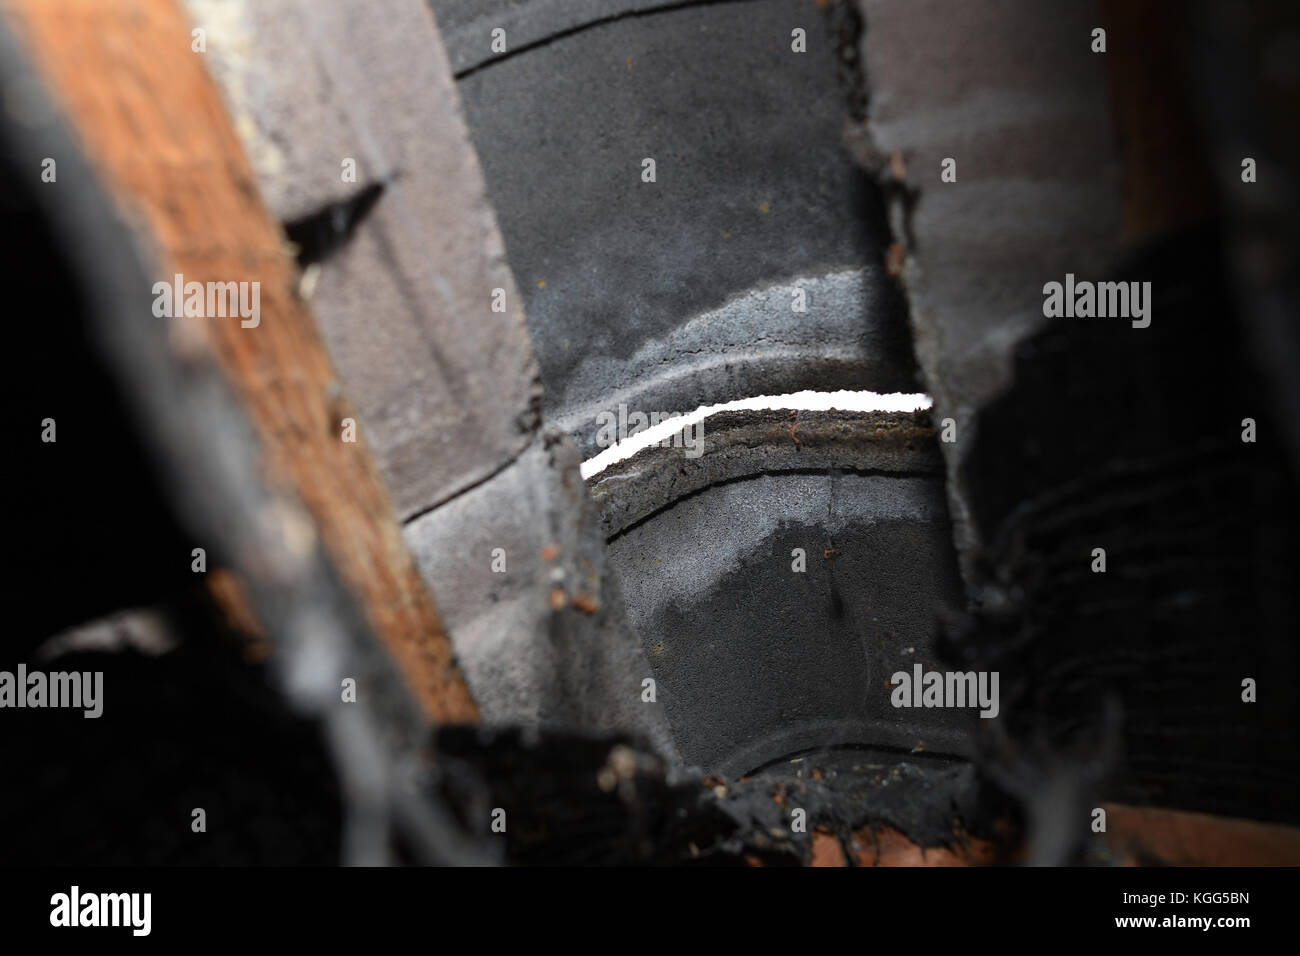 Eine Bohrung in zwischen Firstziegel auf Haus Dach von unten innen Dachboden gesehen nach Moos weg an Beton frisst. Stockfoto